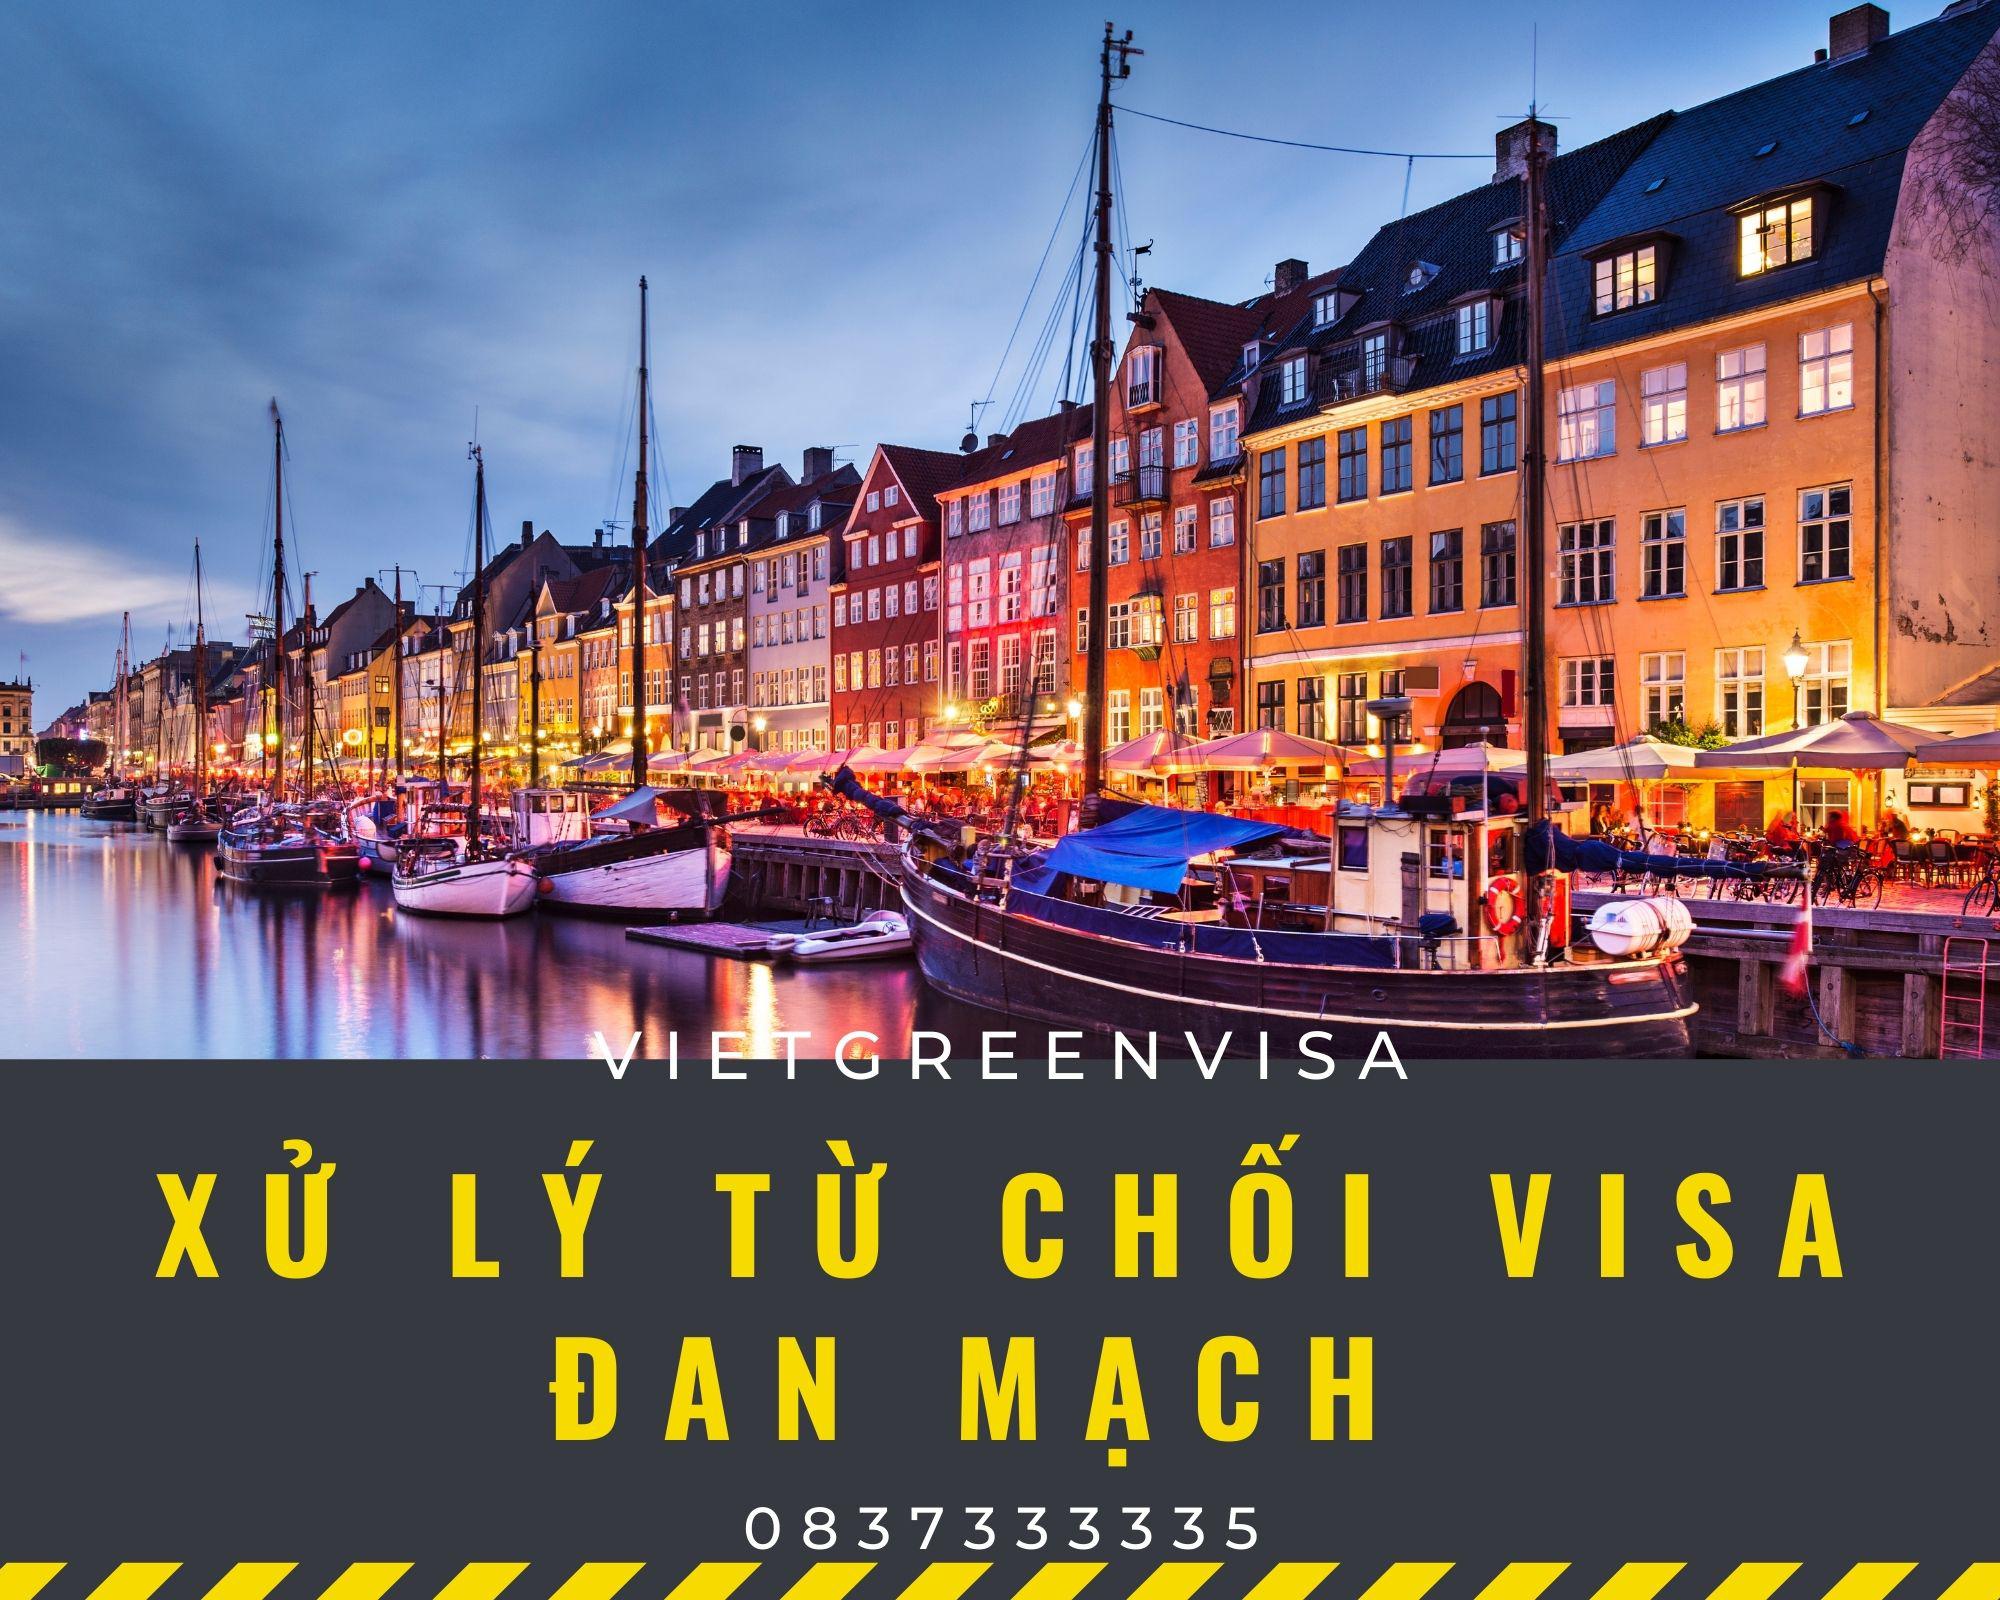 Dịch vụ xử lý visa Đan Mạch bị từ chối nhanh gọn